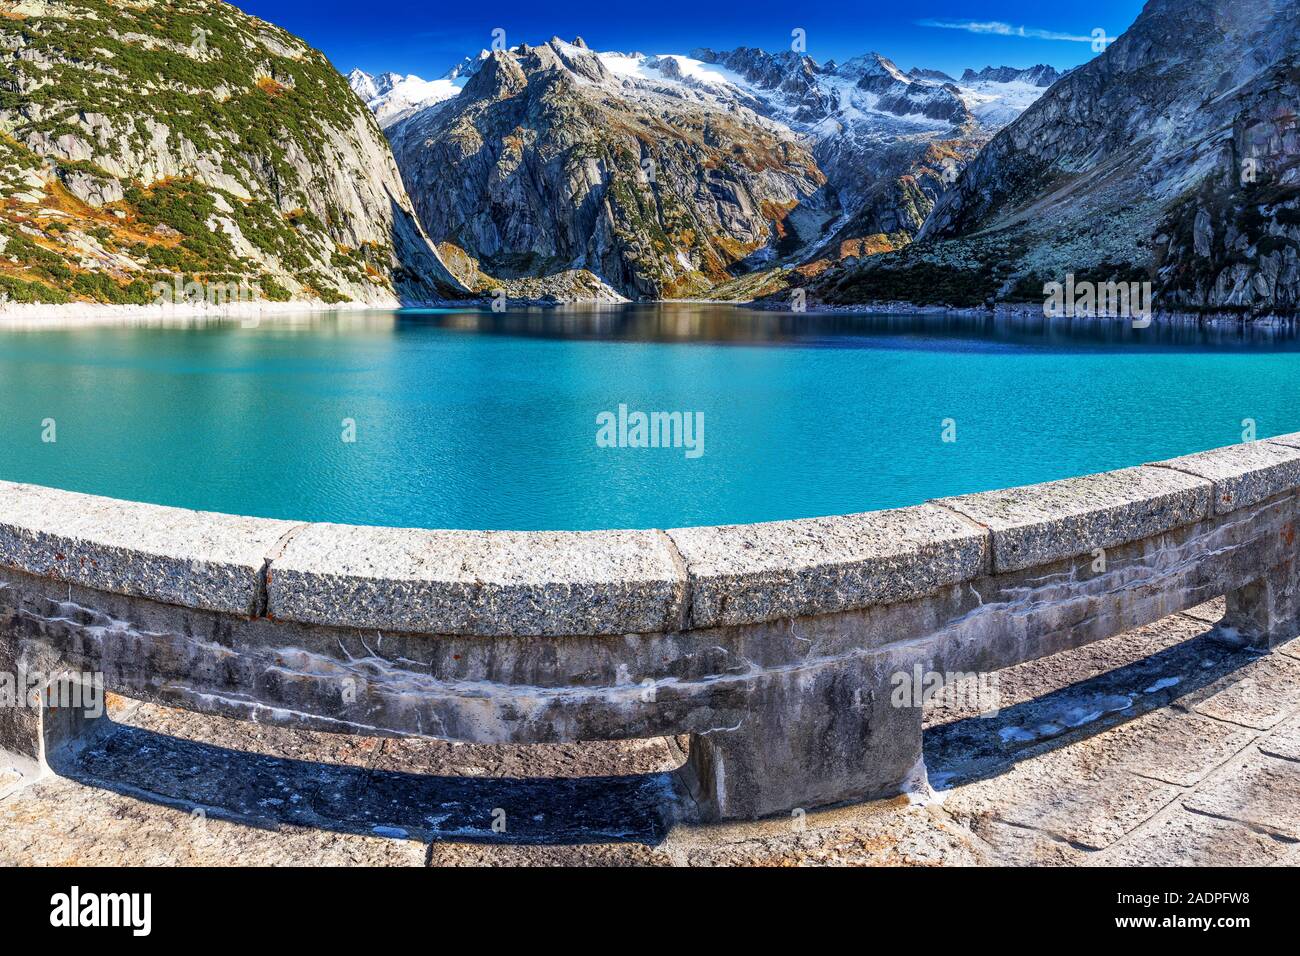 Gelmer See in der Nähe von der Grimselpass in den Schweizer Alpen, Gelmersee, Schweiz. Stockfoto